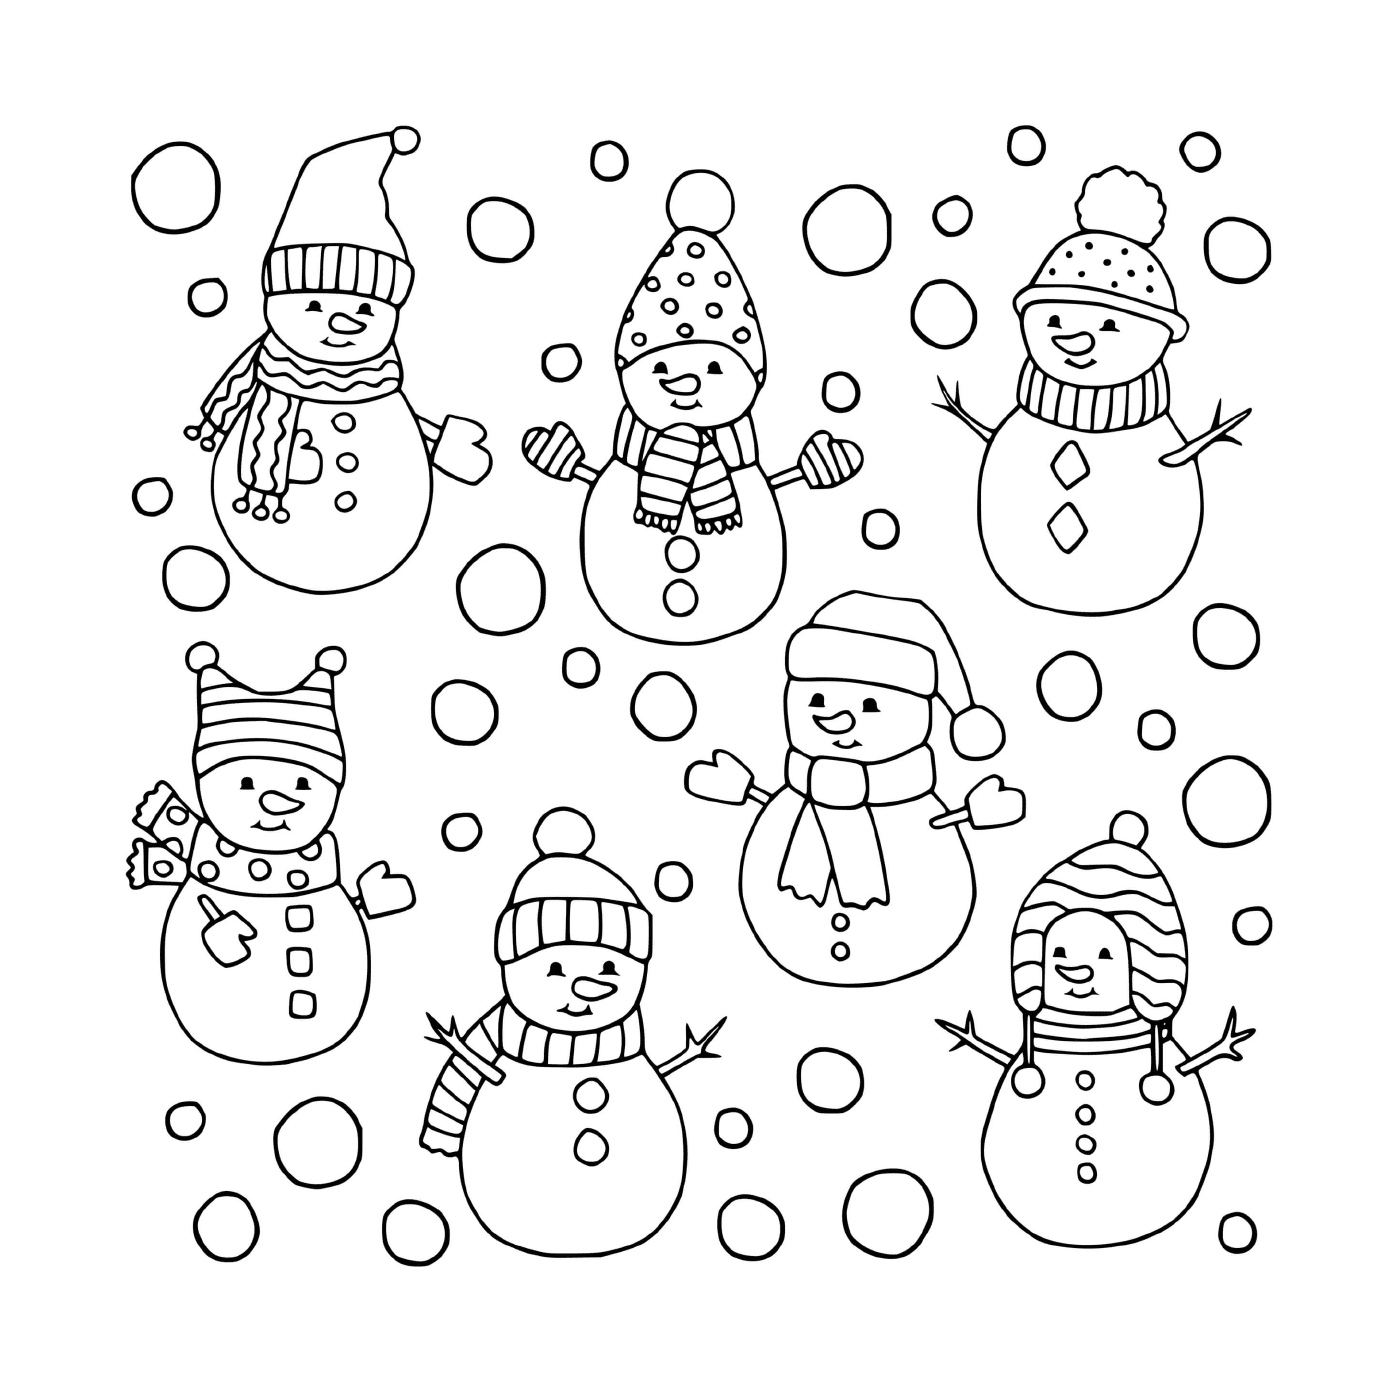  Vários bonecos de neve diferentes 